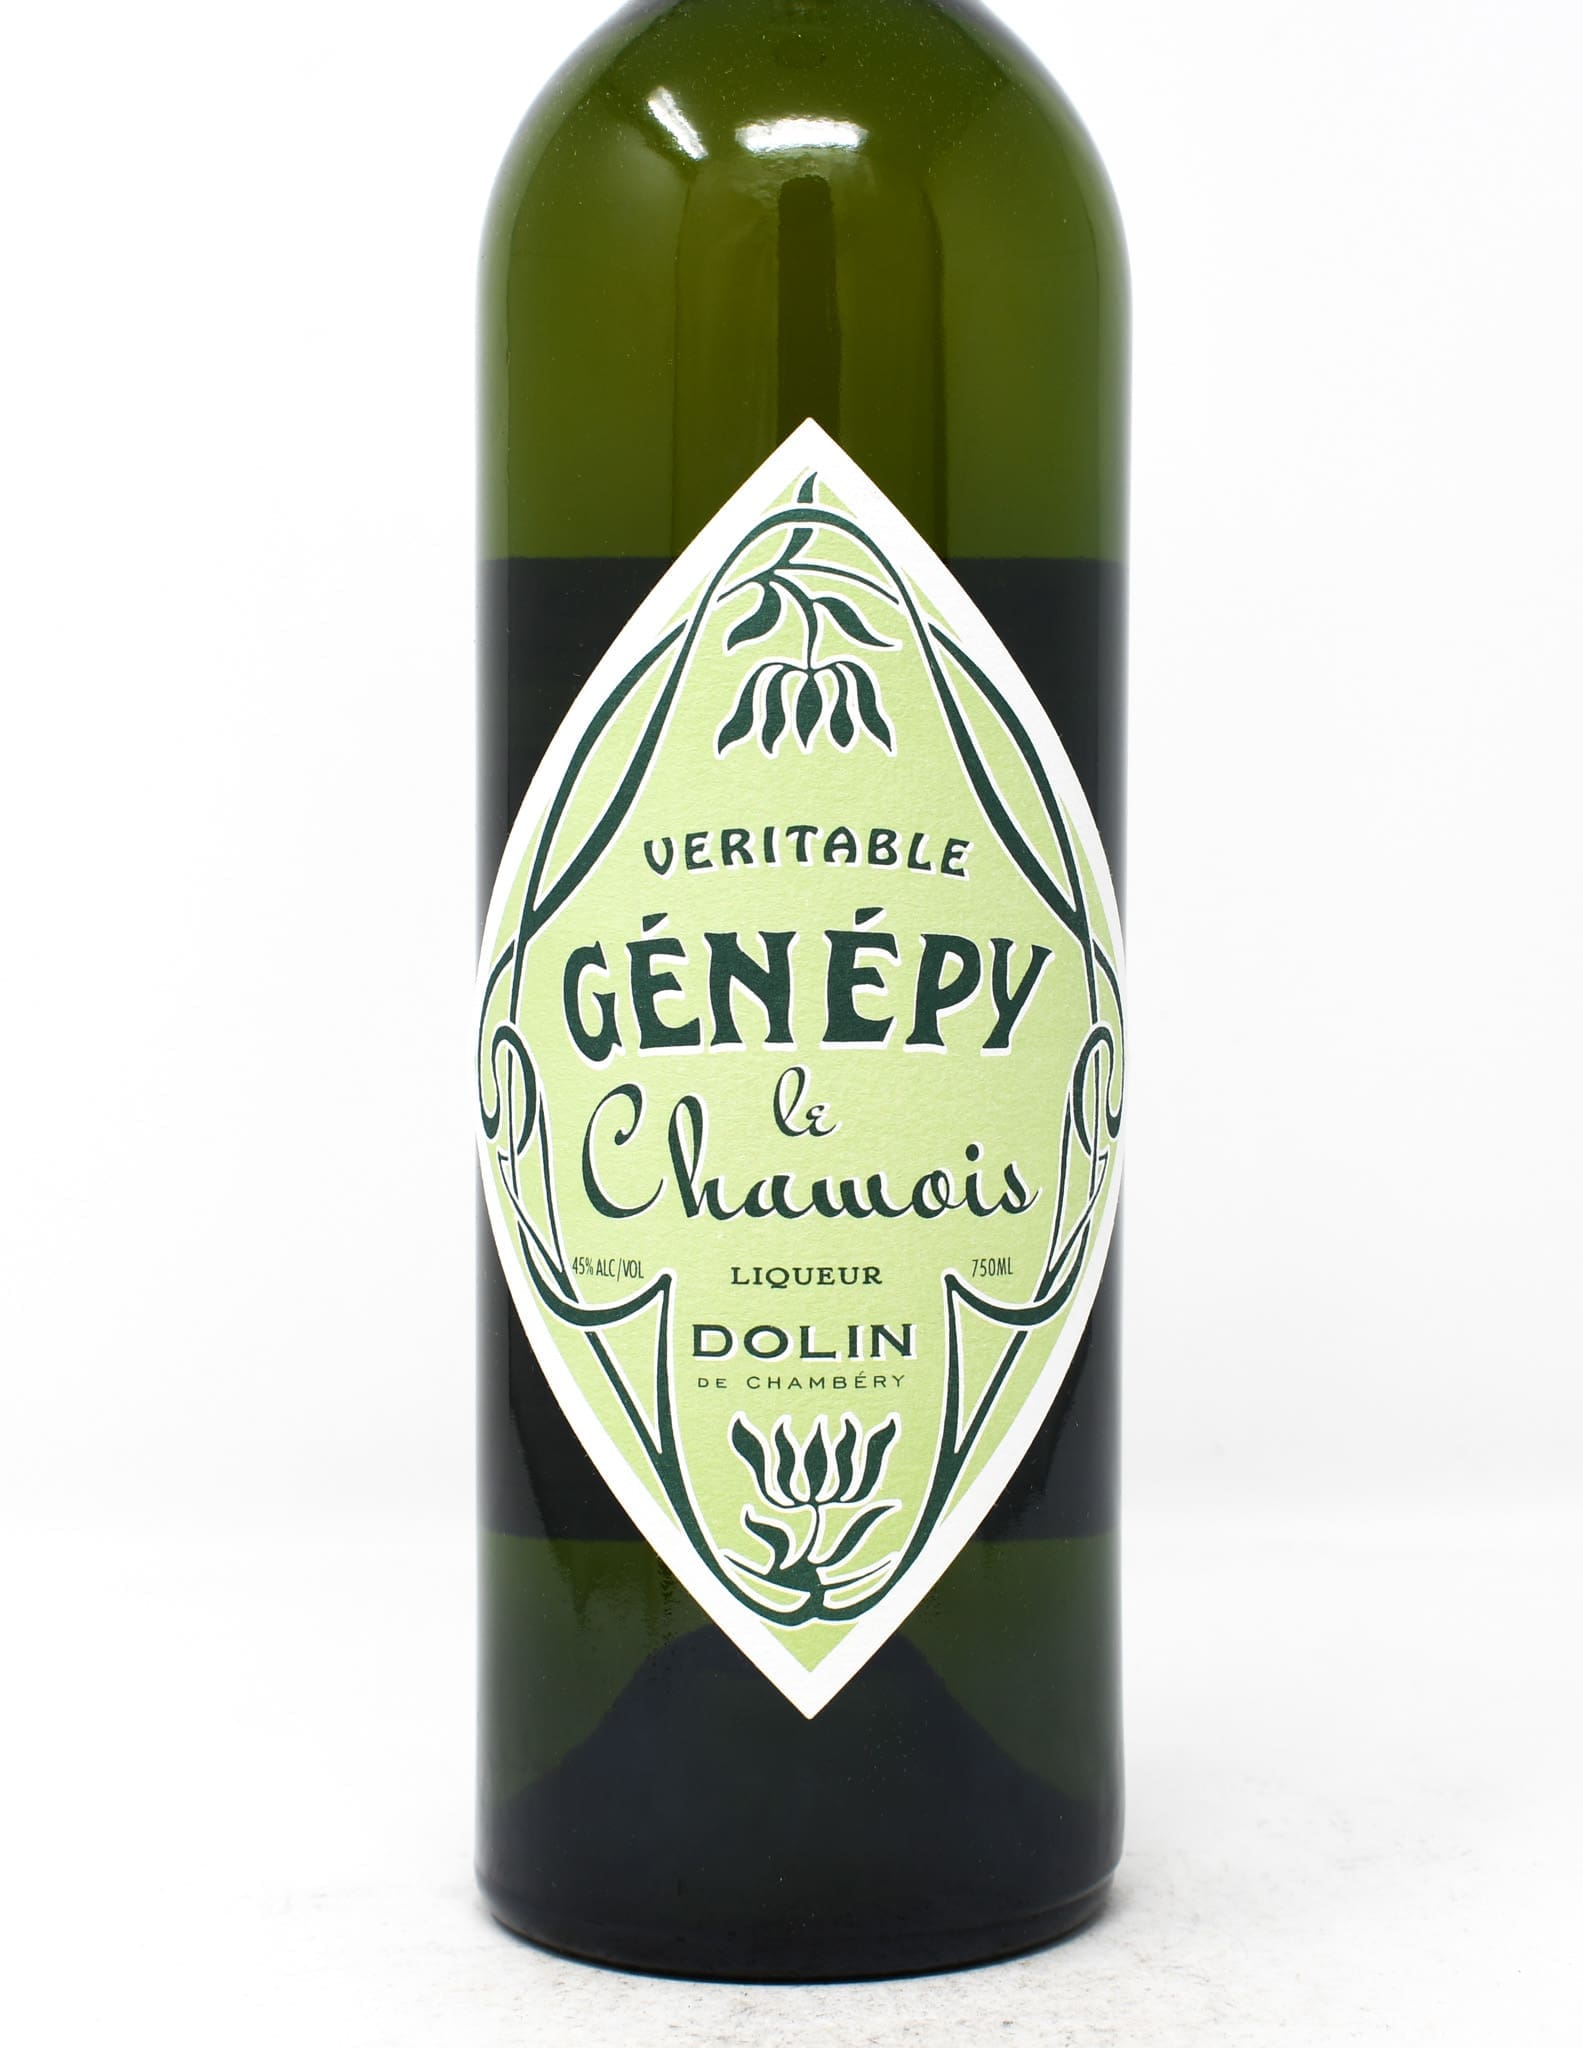 Dolin Génépy le Chamois Liqueur, 750ml - Princeville Wine Market